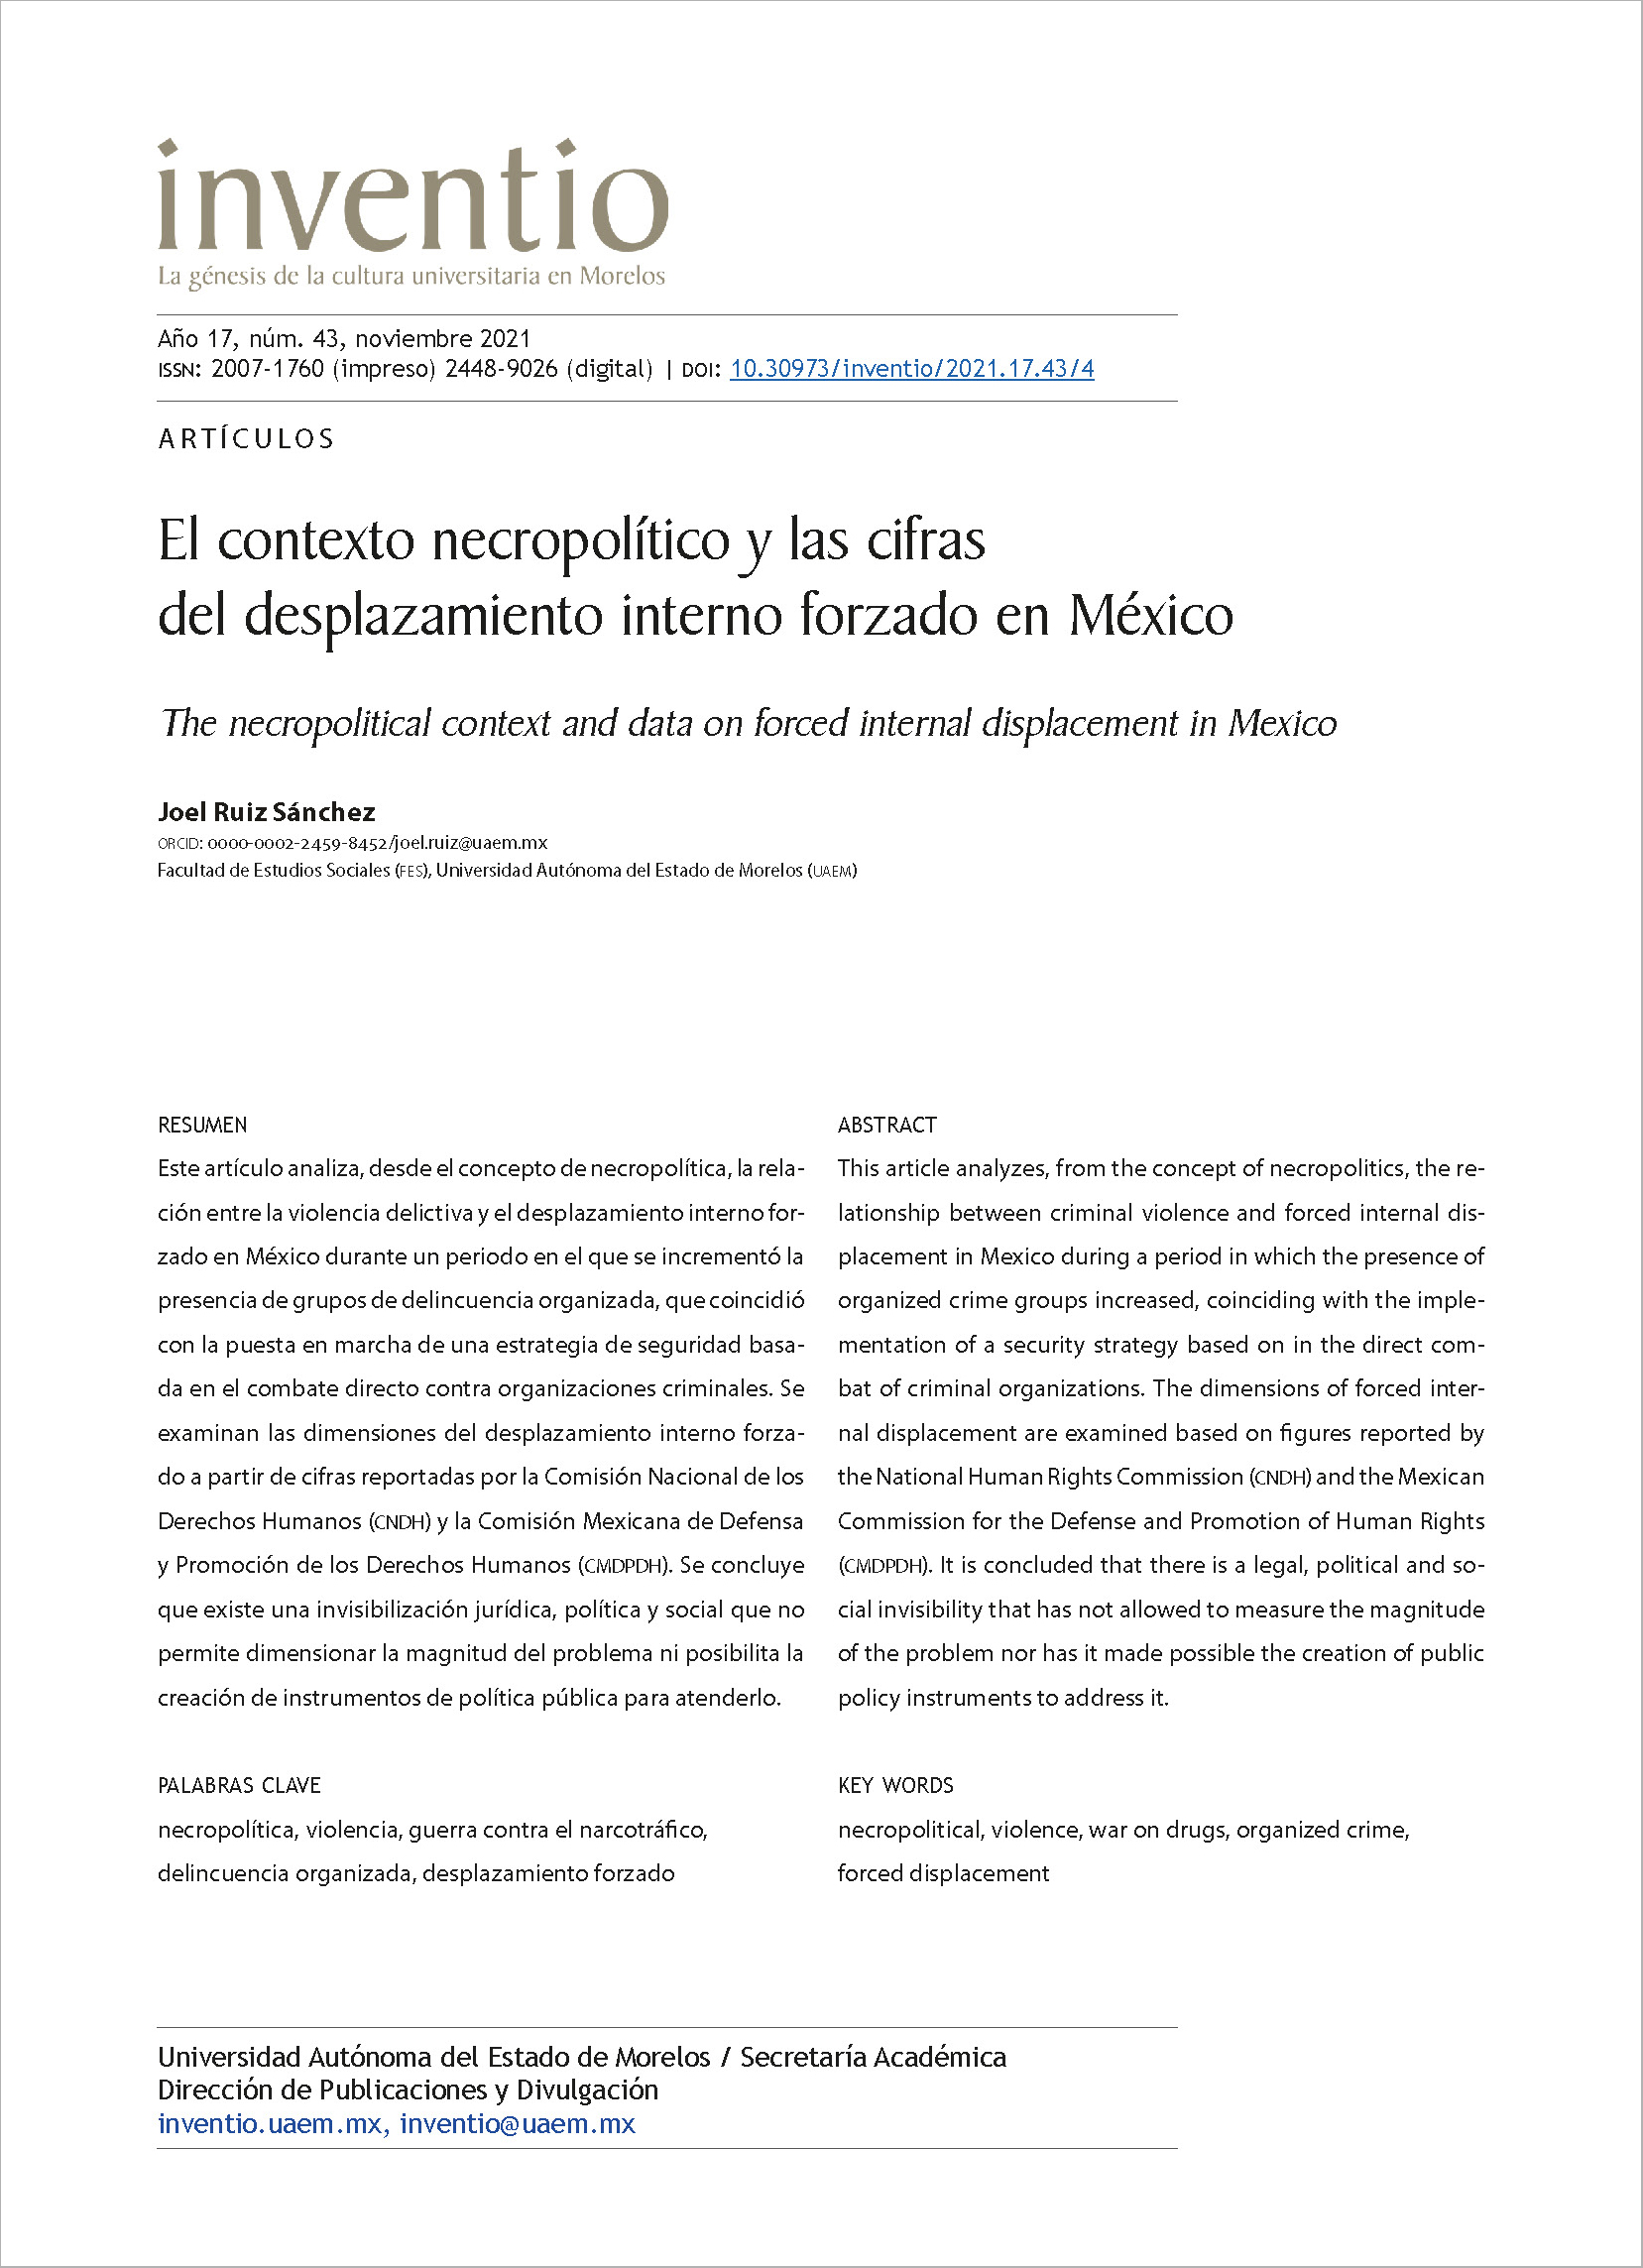 El contexto necropolítico y las cifras del desplazamiento interno forzado en México